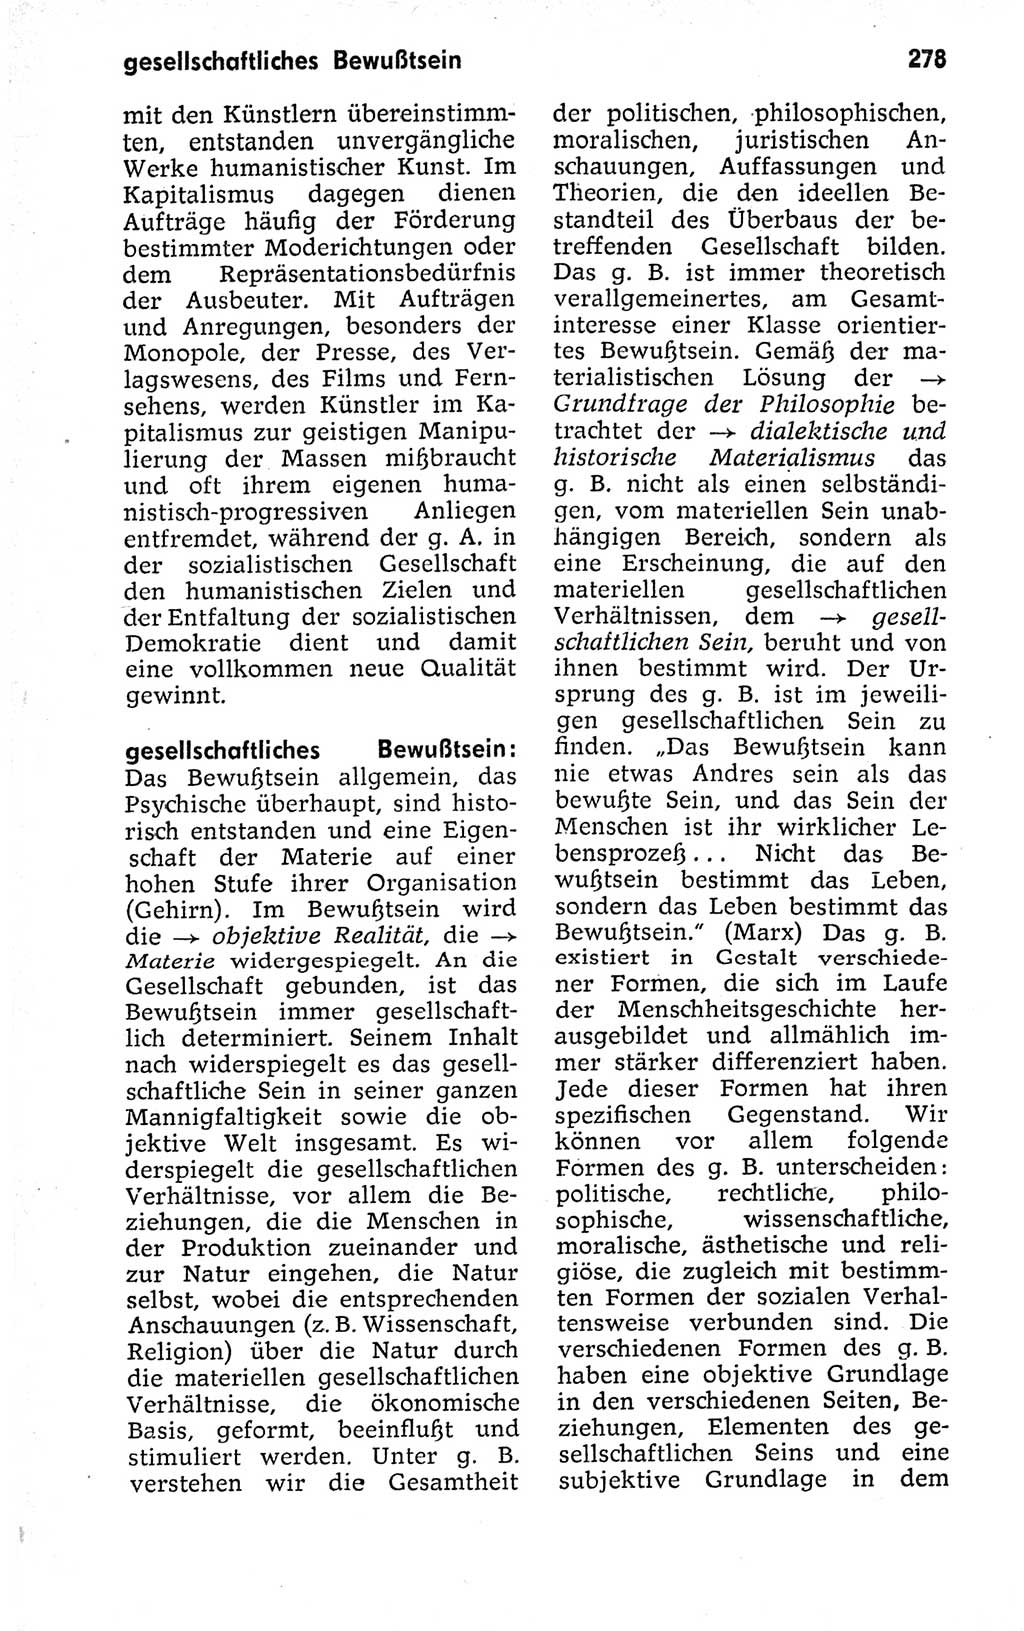 Kleines politisches Wörterbuch [Deutsche Demokratische Republik (DDR)] 1973, Seite 278 (Kl. pol. Wb. DDR 1973, S. 278)